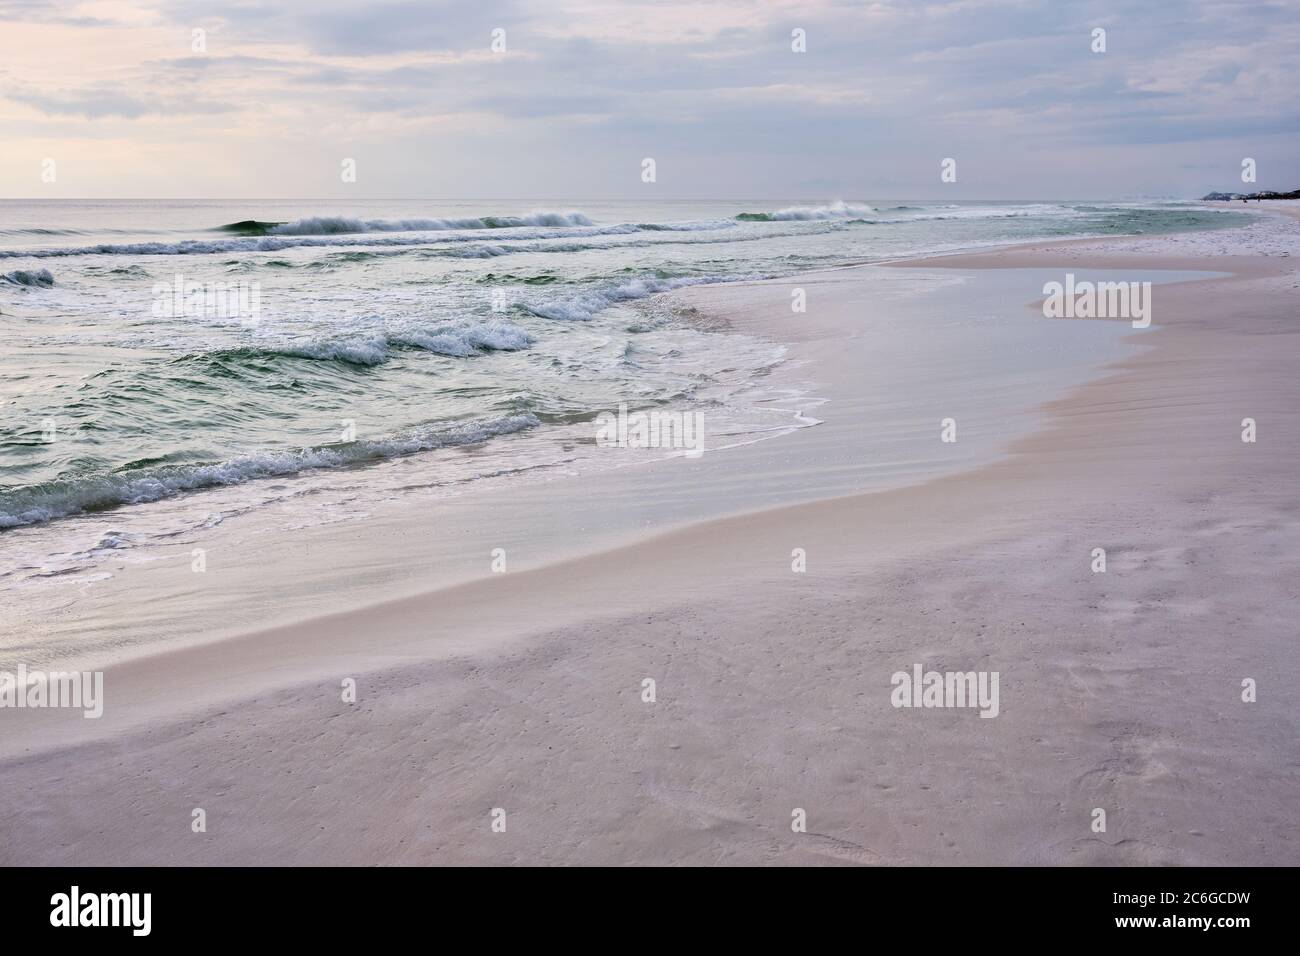 Le acque smeraldo del Golfo del Messico incontrano la sabbia bianca di Destin, Florida, creando un tranquillo mare in tonalità pastello. Foto Stock